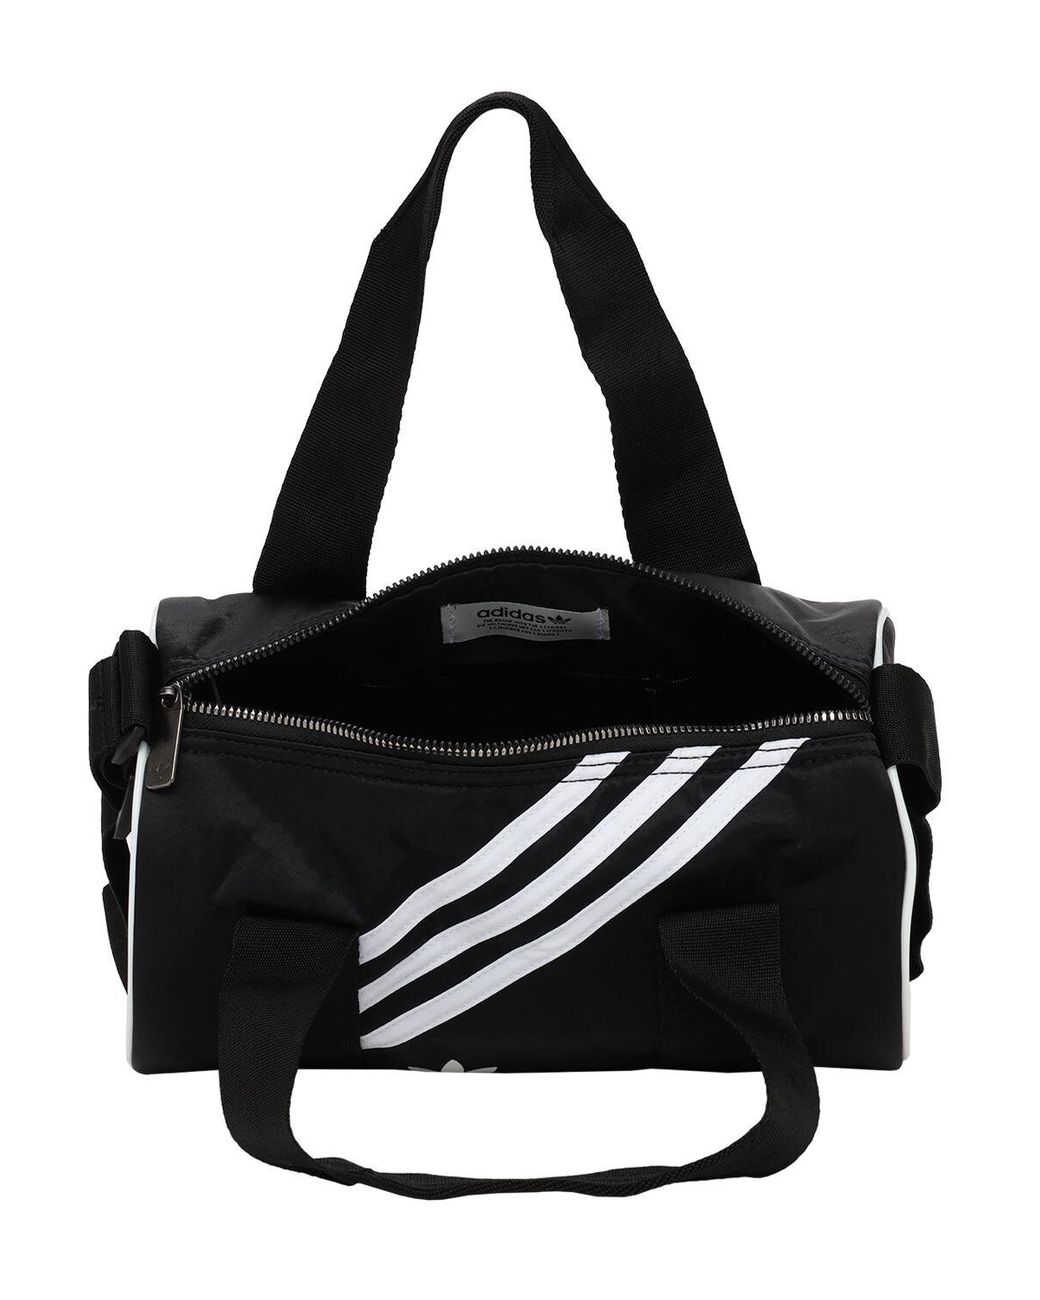 adidas Originals Mini Duffle Bag in Black | Lyst